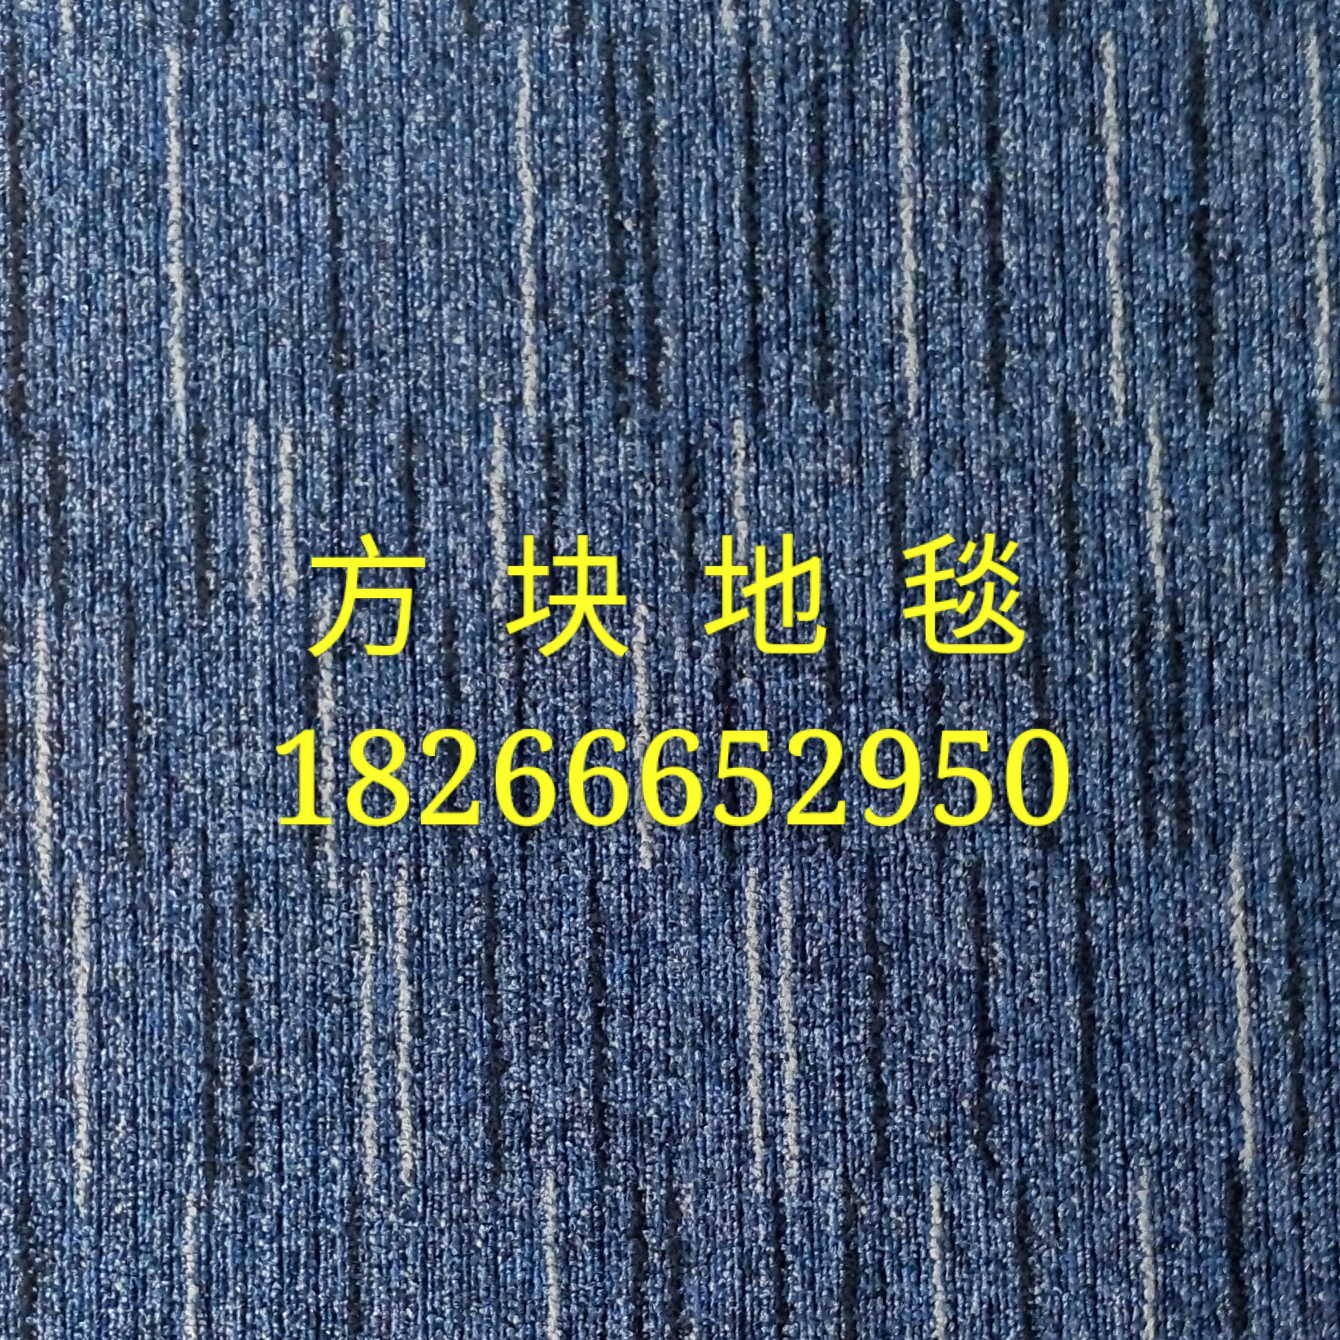 青岛市青岛办公地毯厂家供应青岛办公地毯